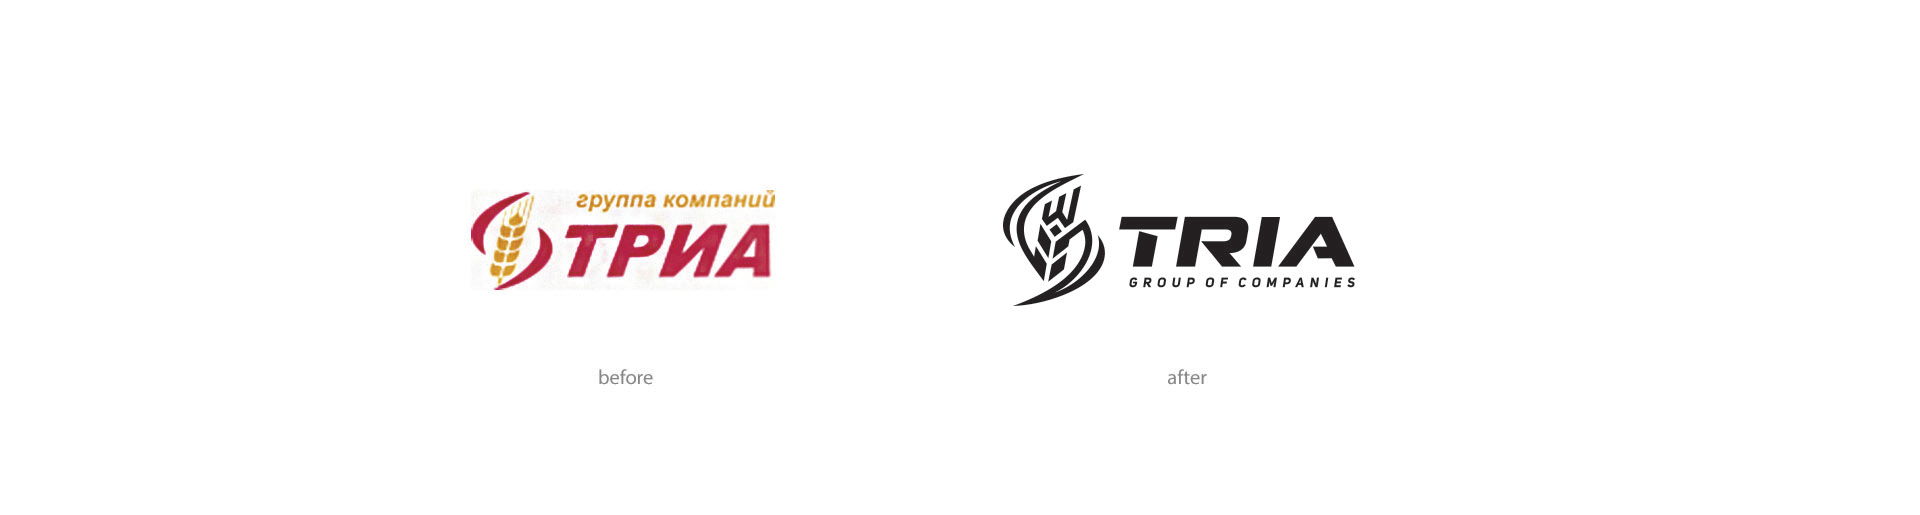 Development of the logo сельскохозяйственной компании, Agro logo design